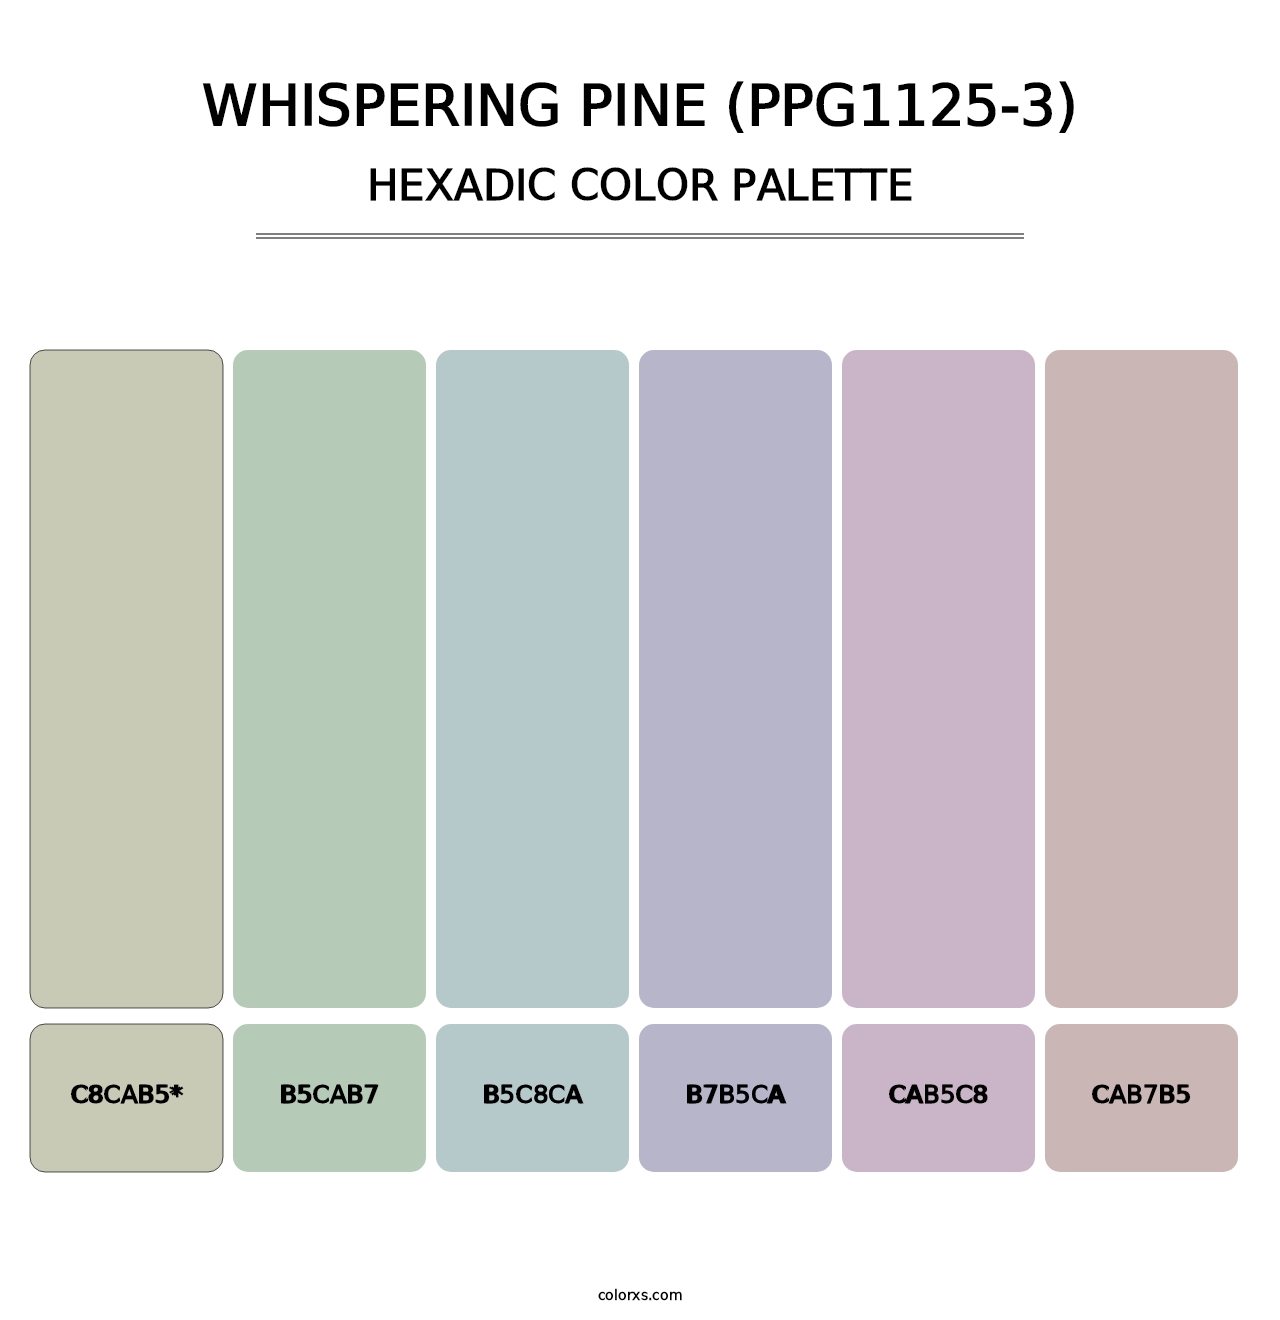 Whispering Pine (PPG1125-3) - Hexadic Color Palette